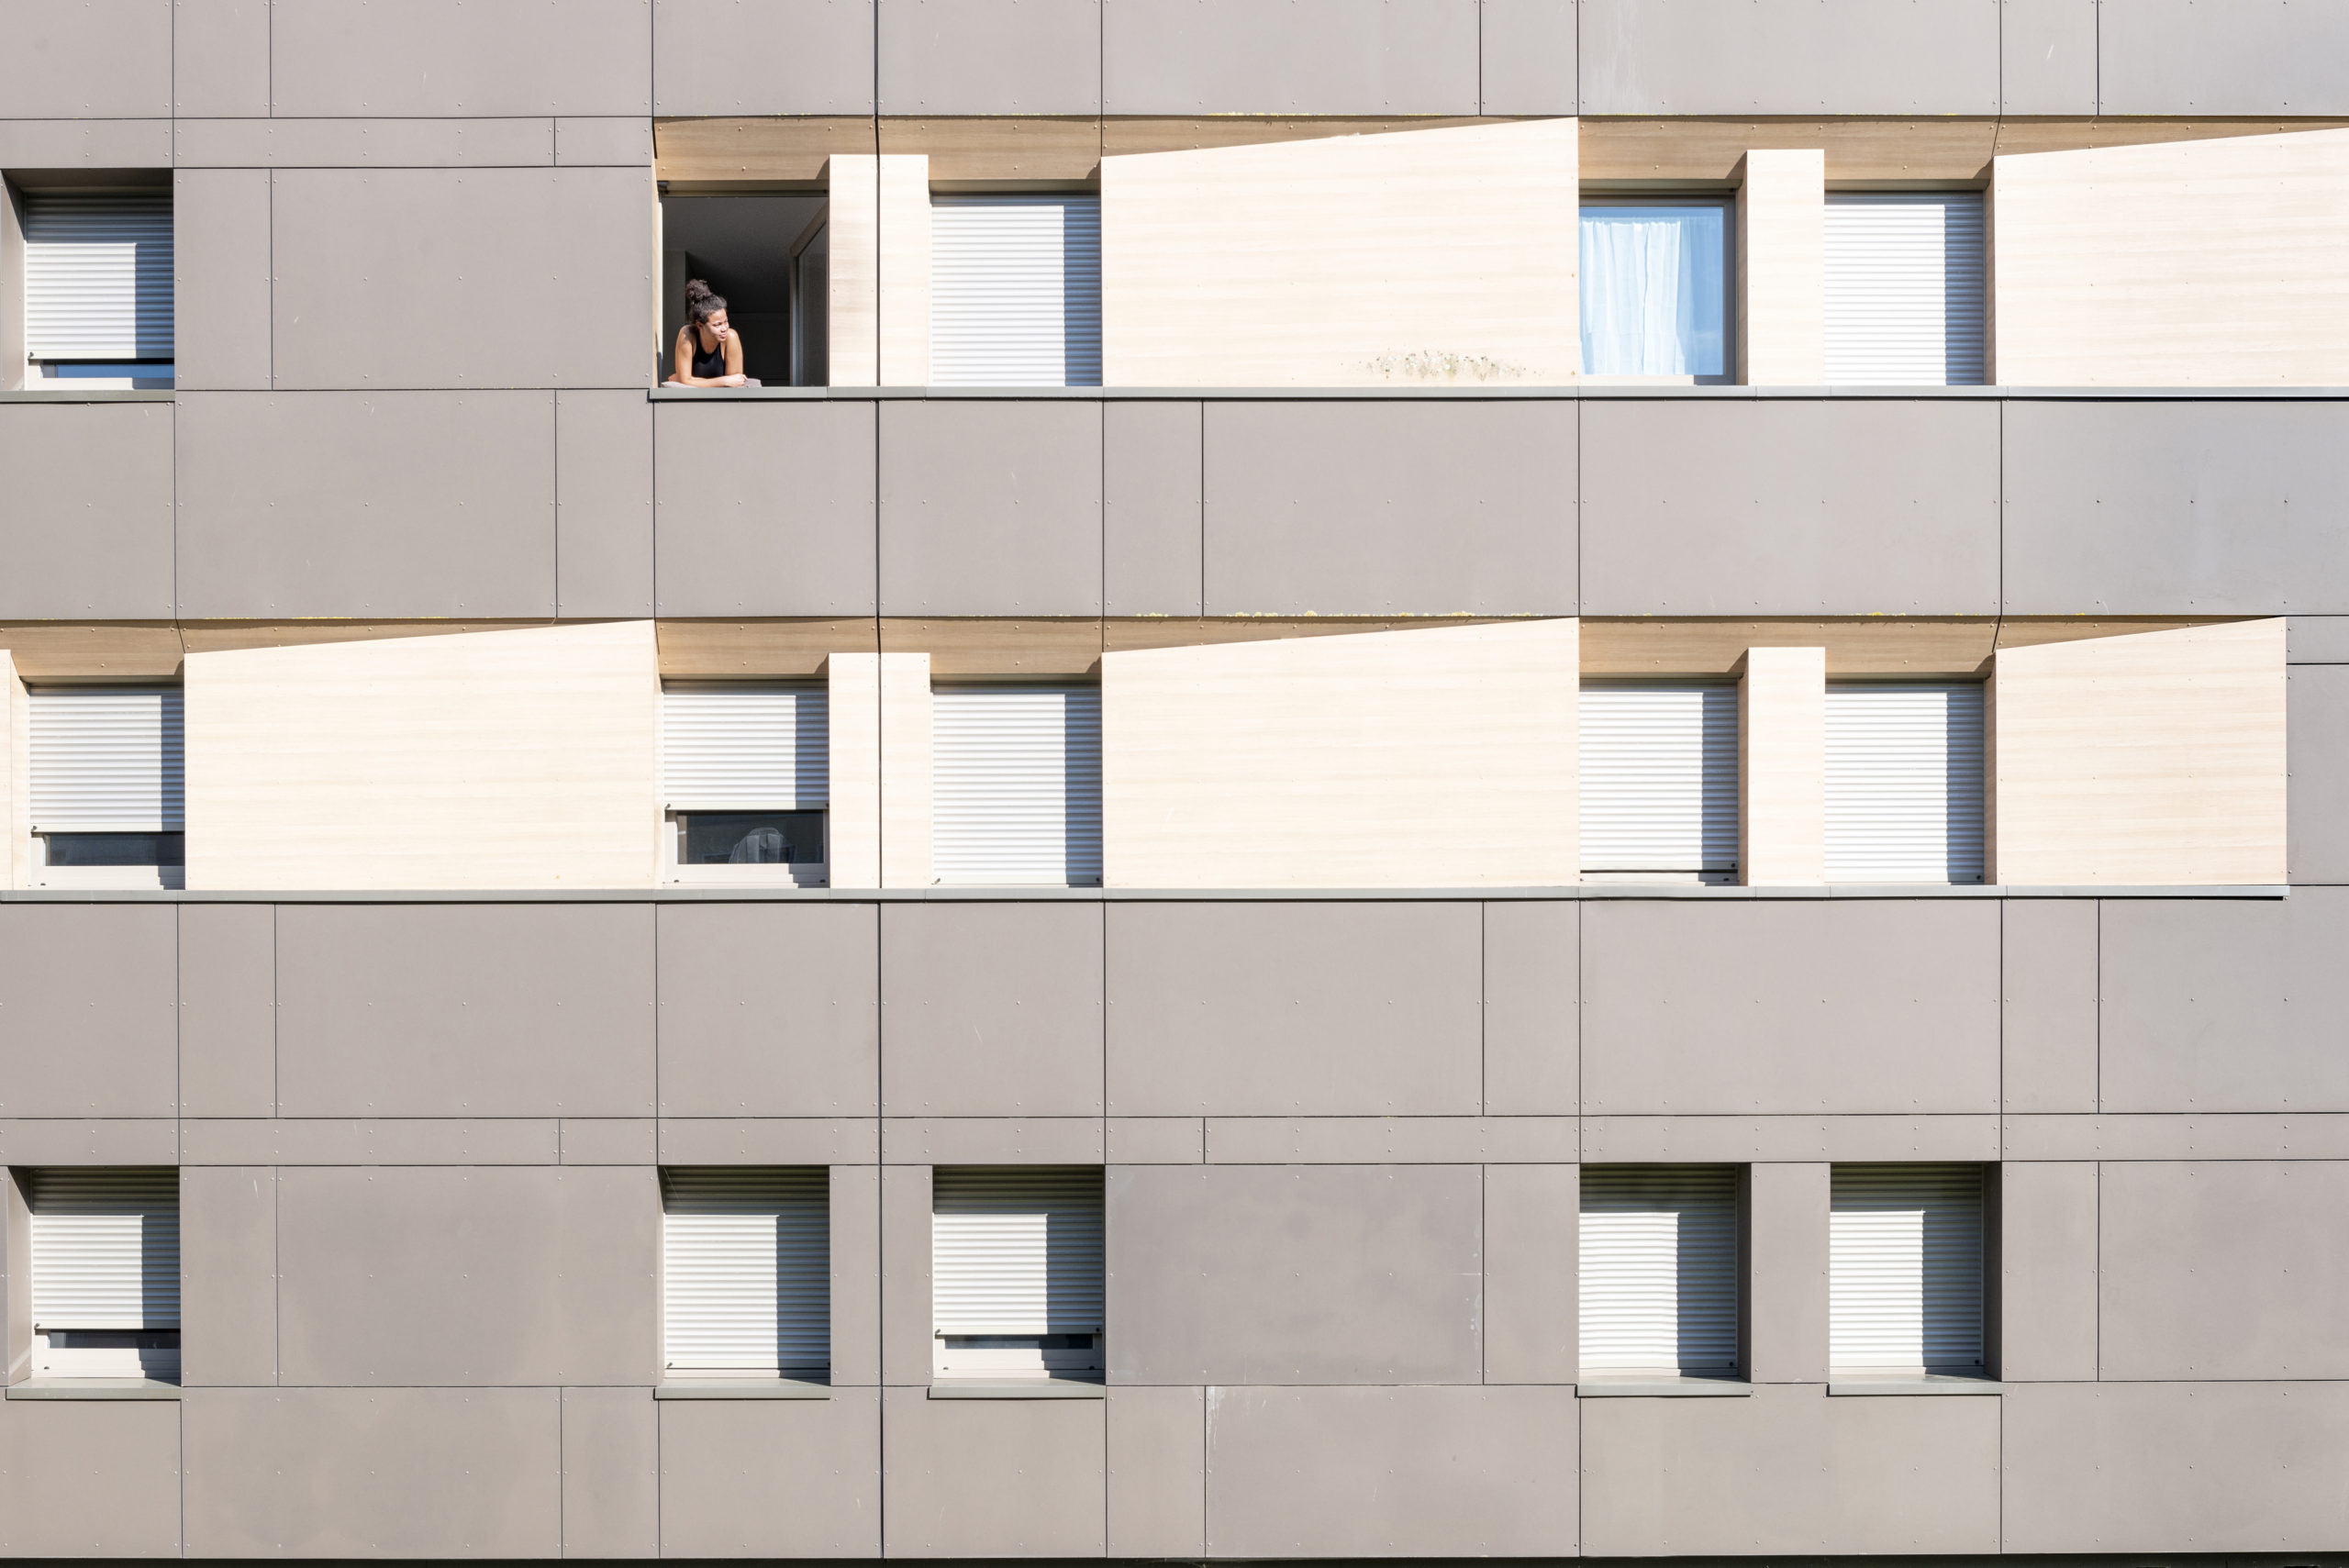 Eine Studentin im Lockdown im Studierendenwohnheim in Poitiers genießt die frische Luft an ihrem Fenster. Viele der Wohnungen scheinen leer, da die Studierenden zu ihren Familien zurückgekehrt sind.